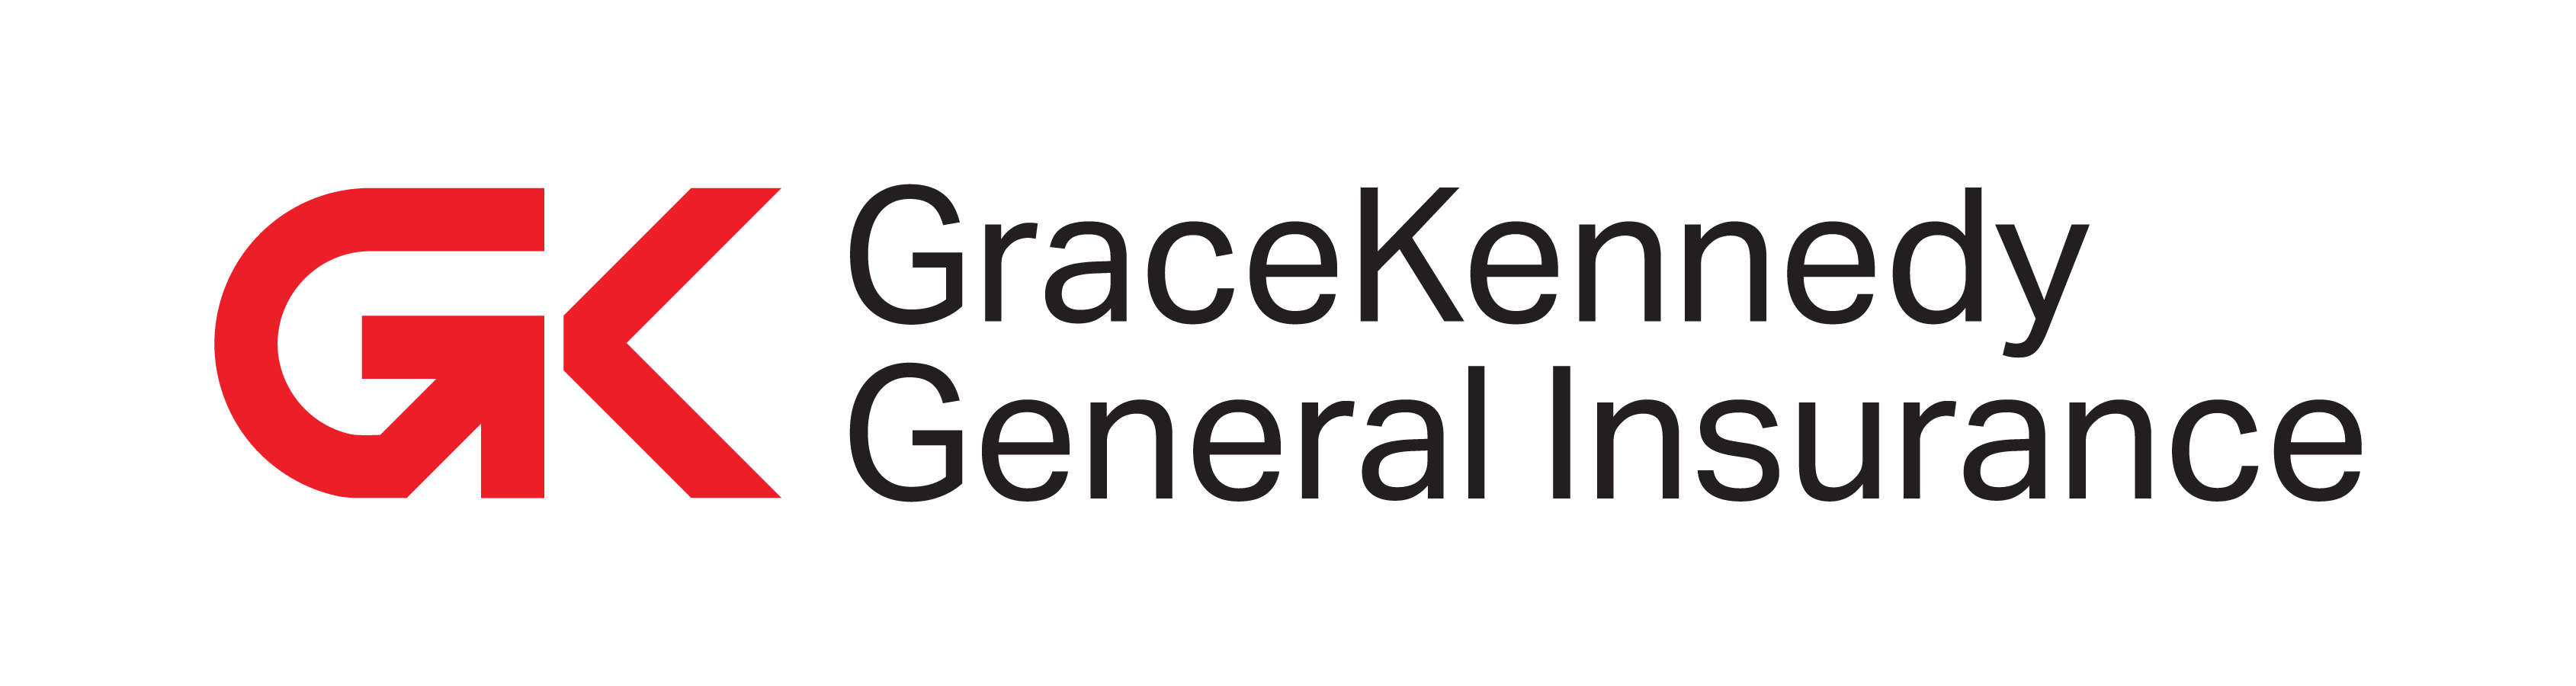 GK Insurance Logo